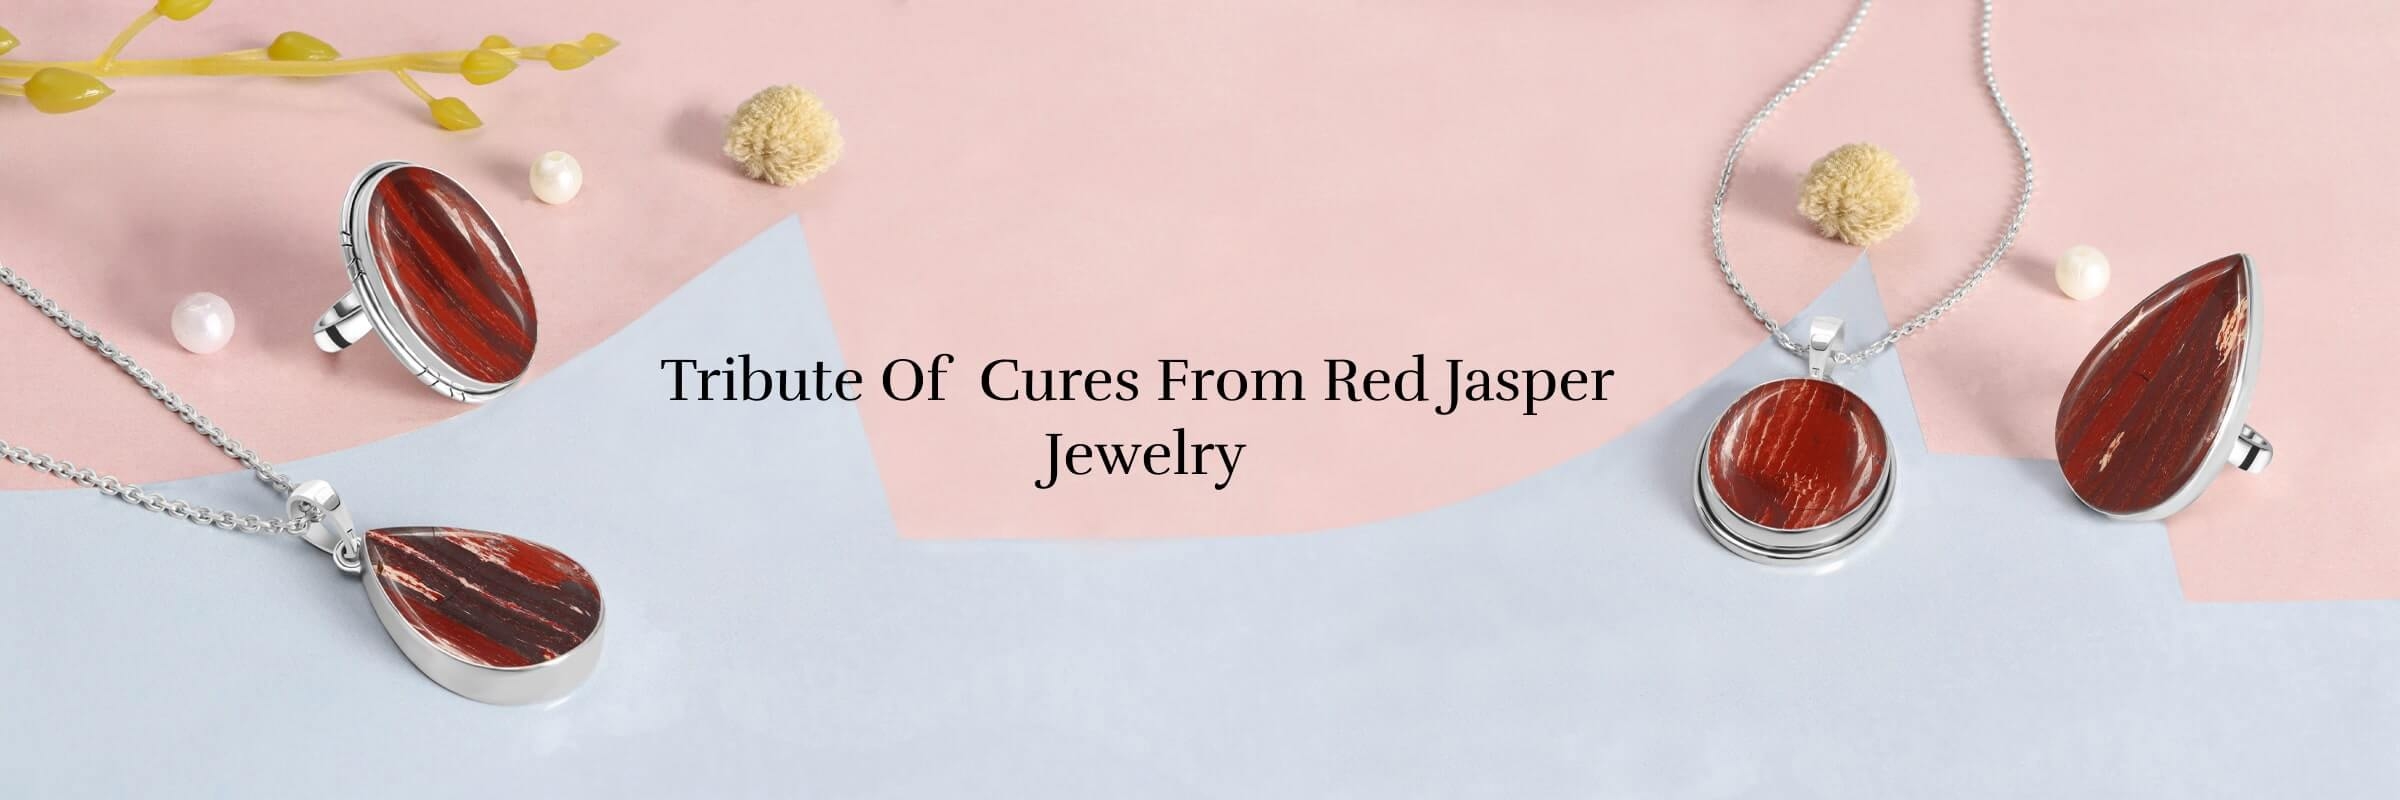 Healing properties of red Jasper stone